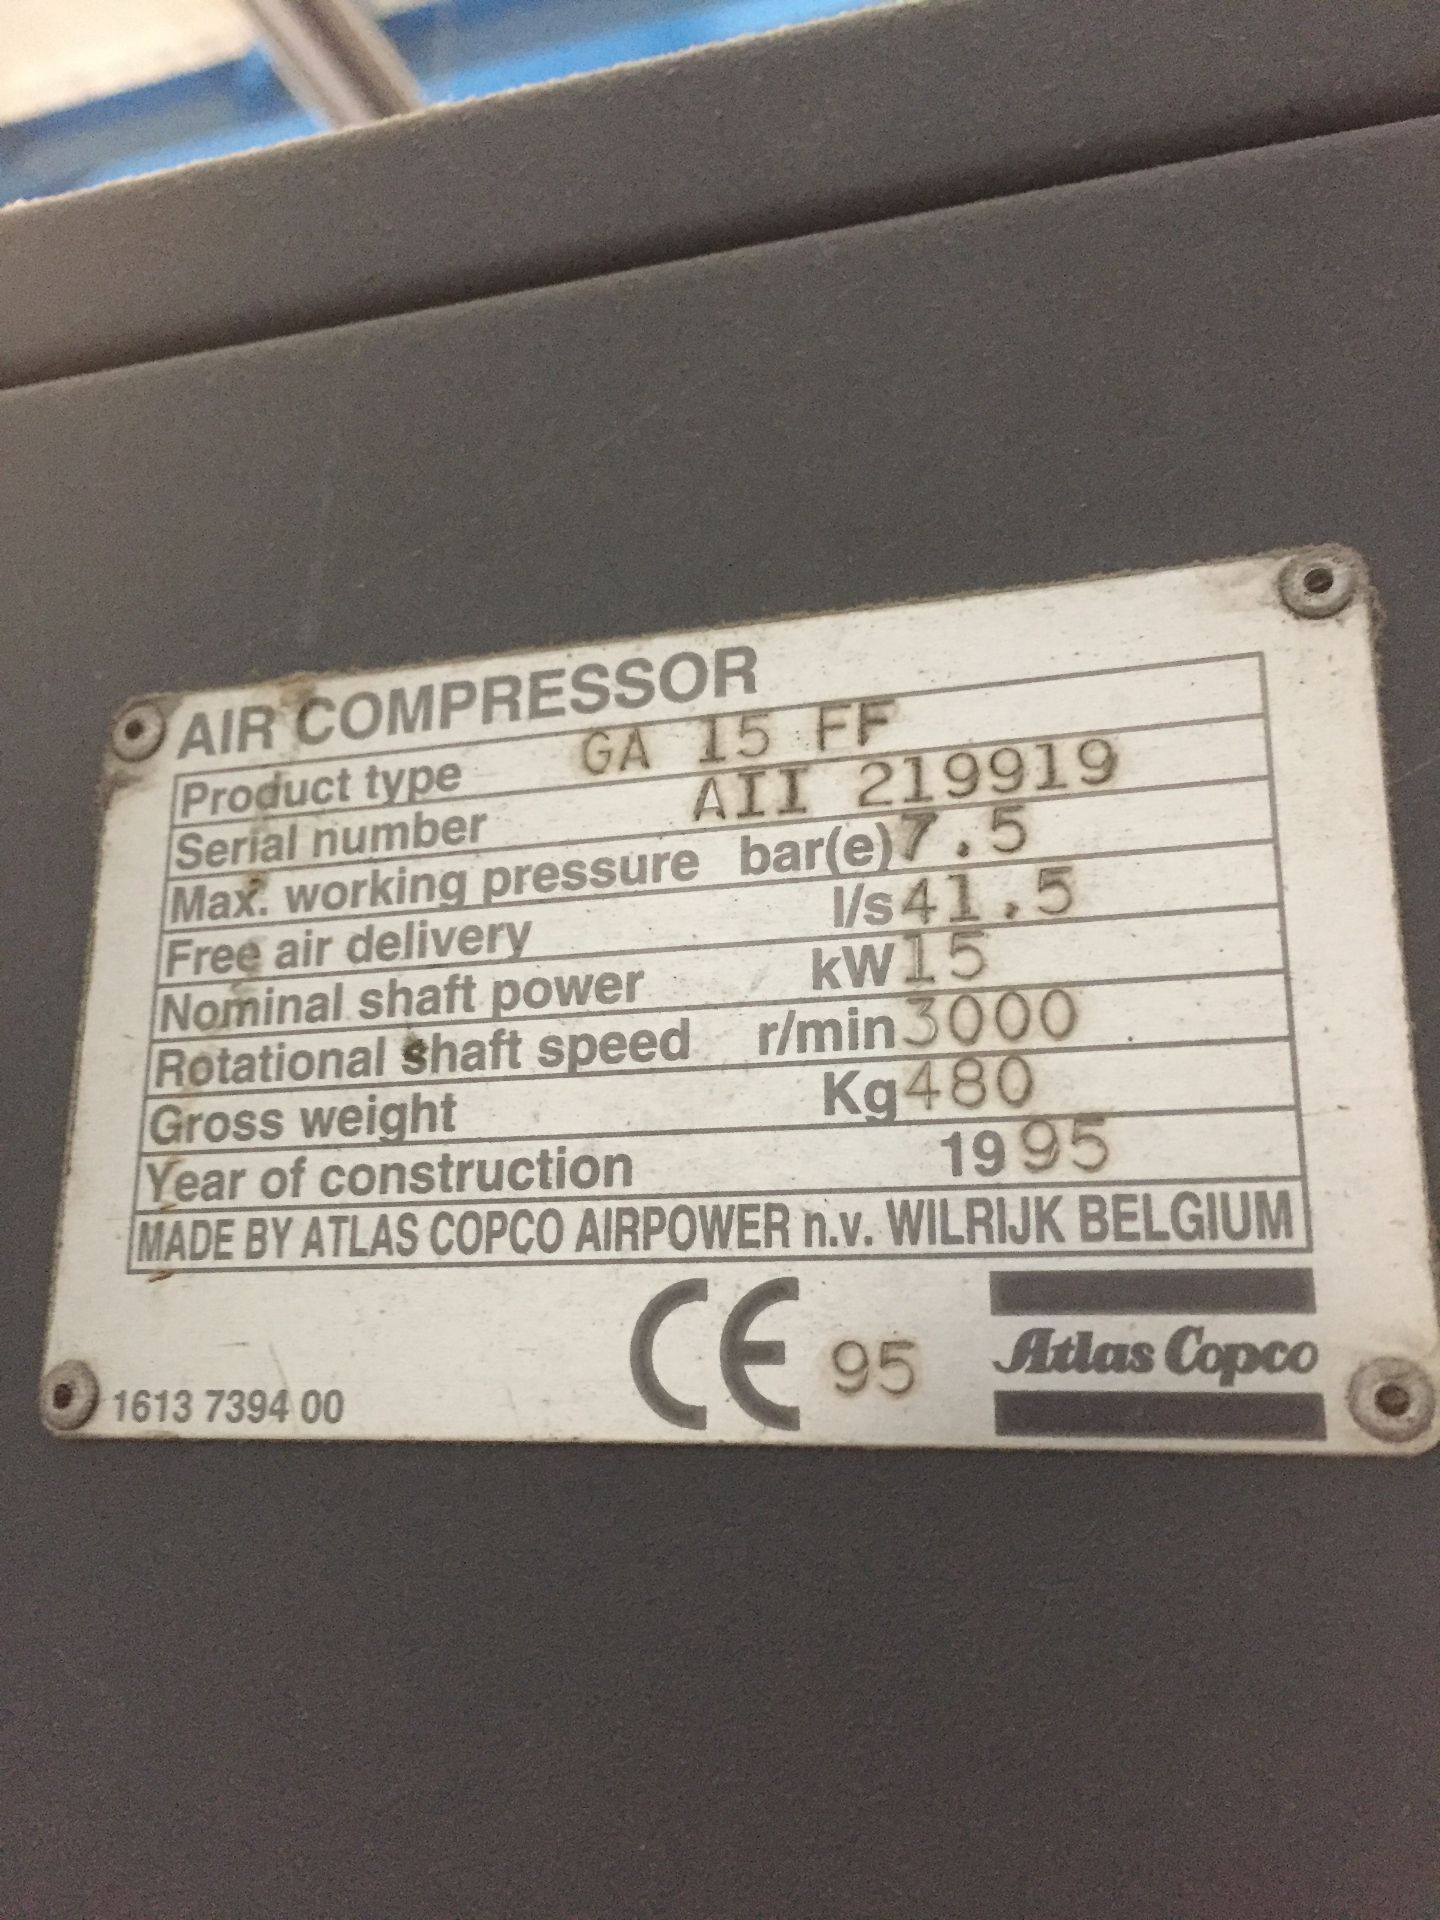 Atlas Copco GA15 FF rotary screw compressor, Serial No. A11 219919 (1995), 7.5 BAR (Risk - Image 3 of 3